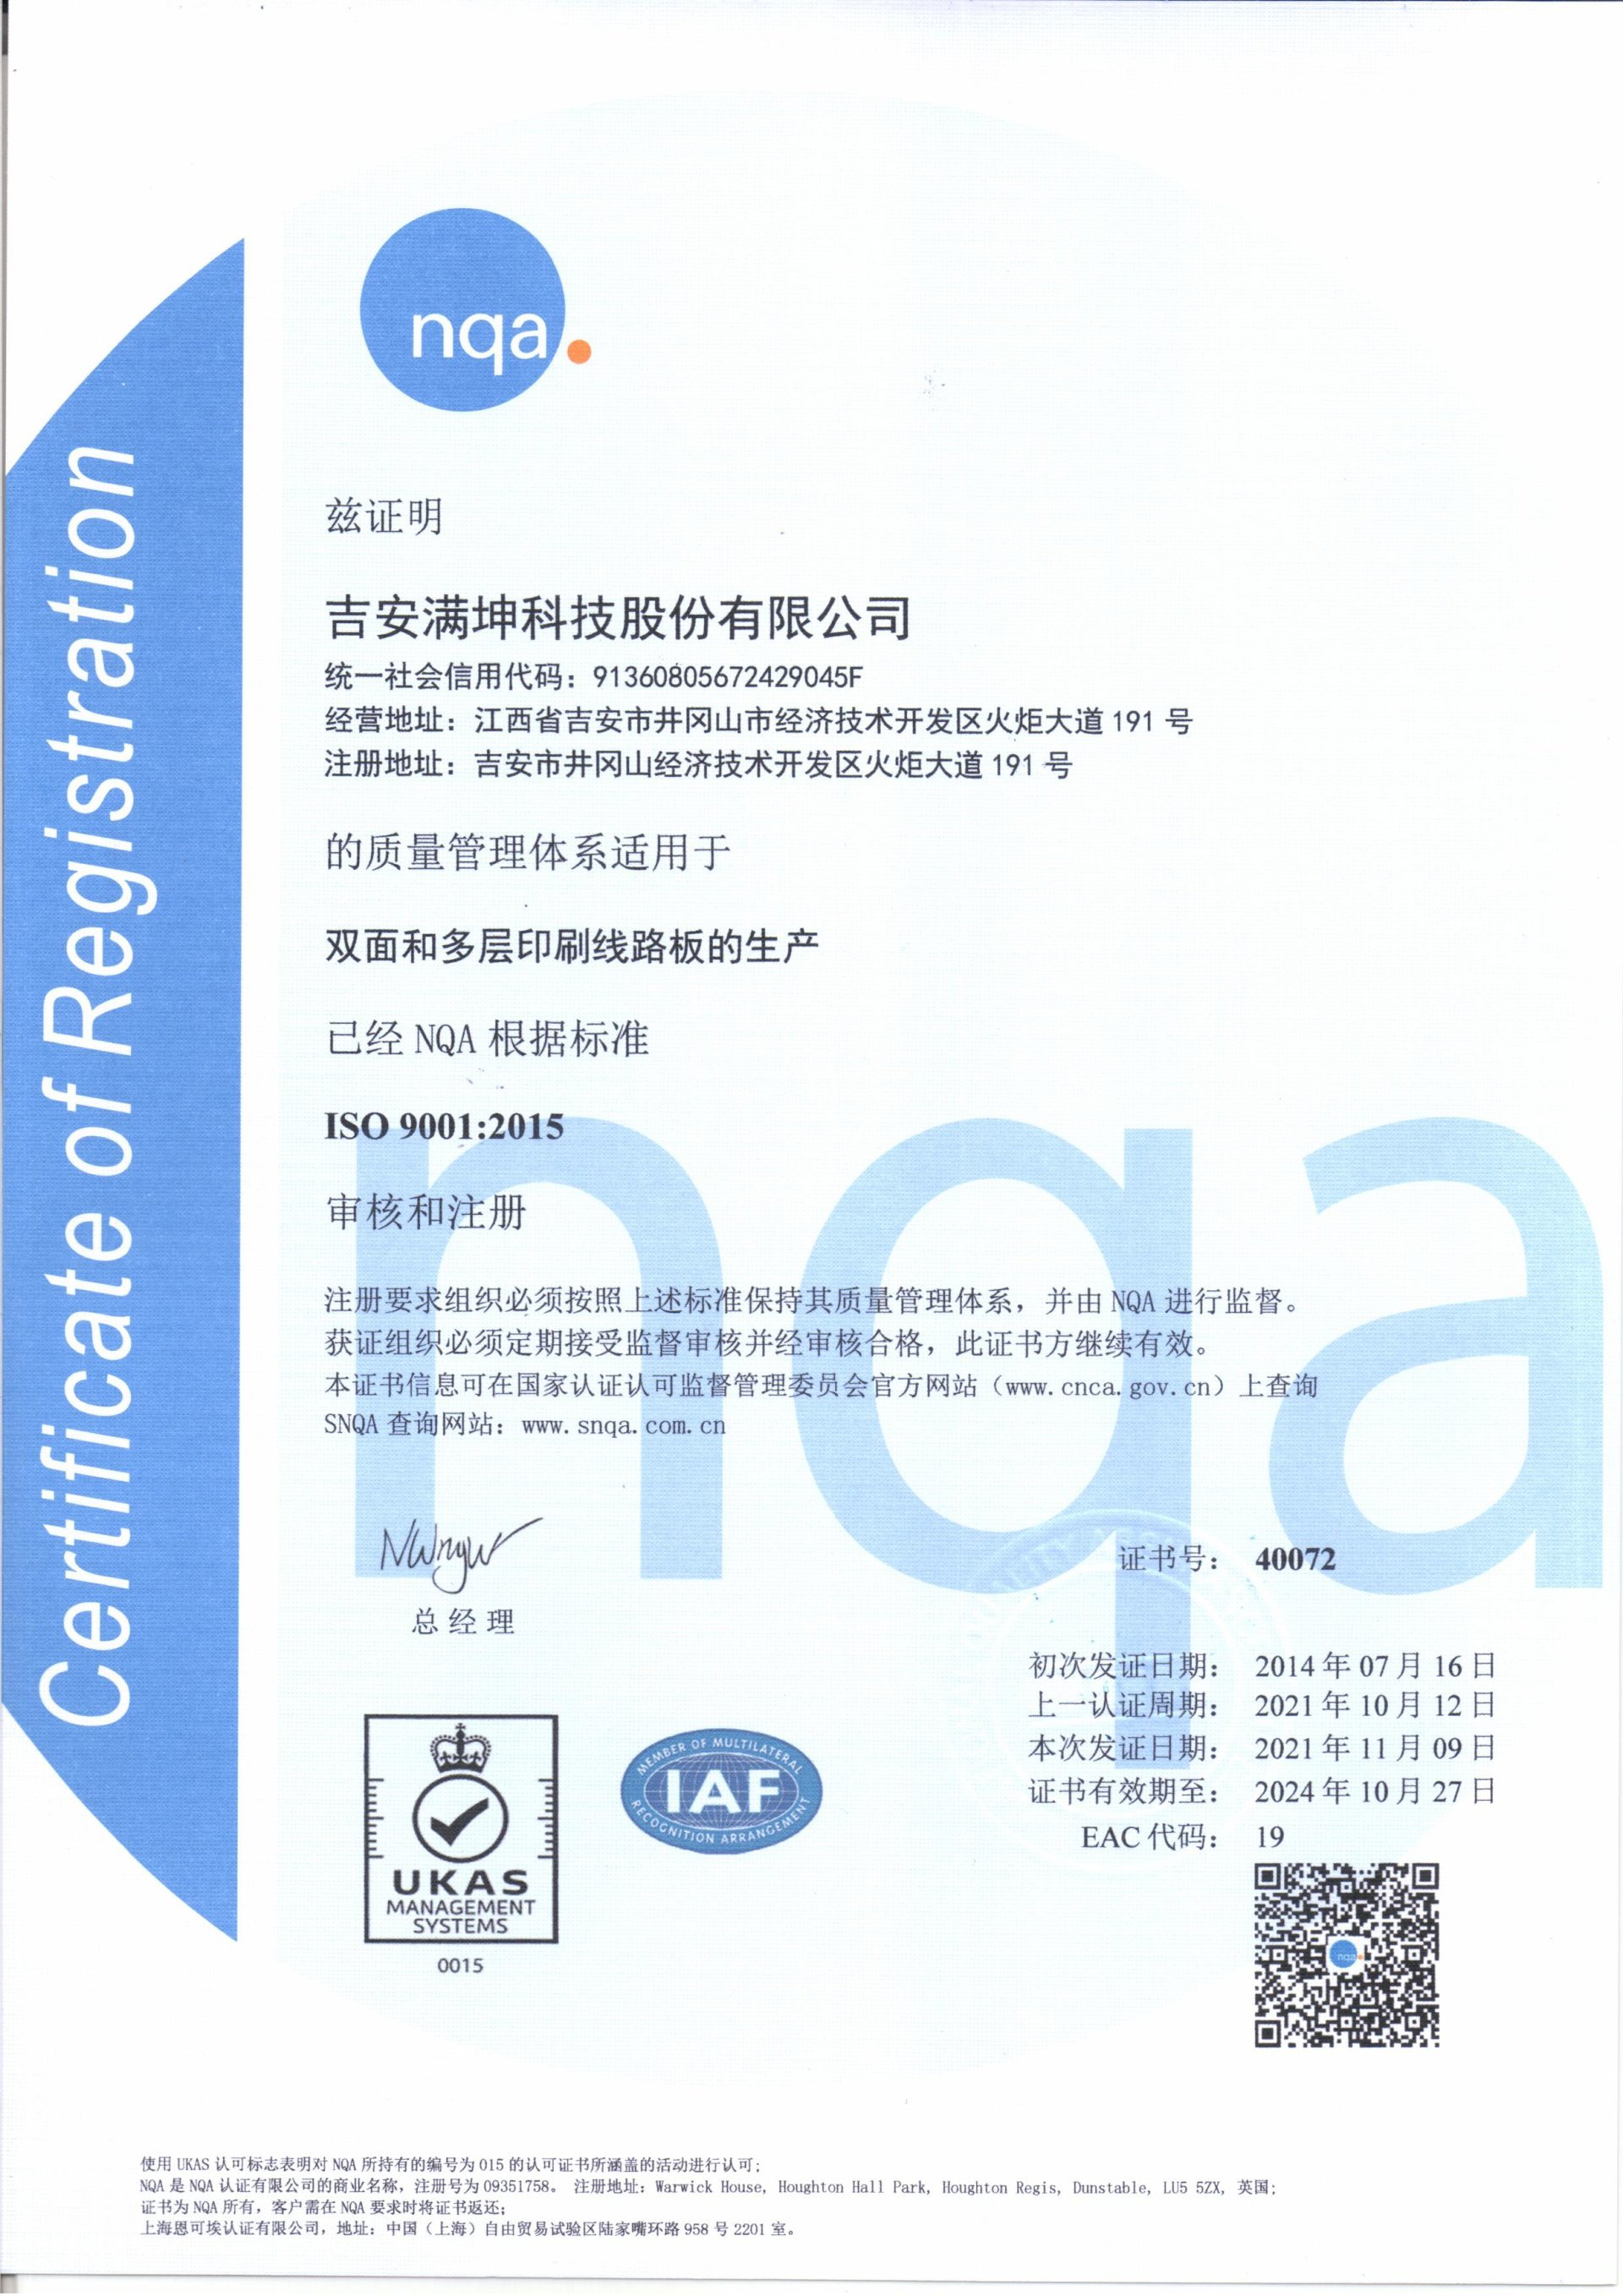 質量管理體系ISO9001：2015